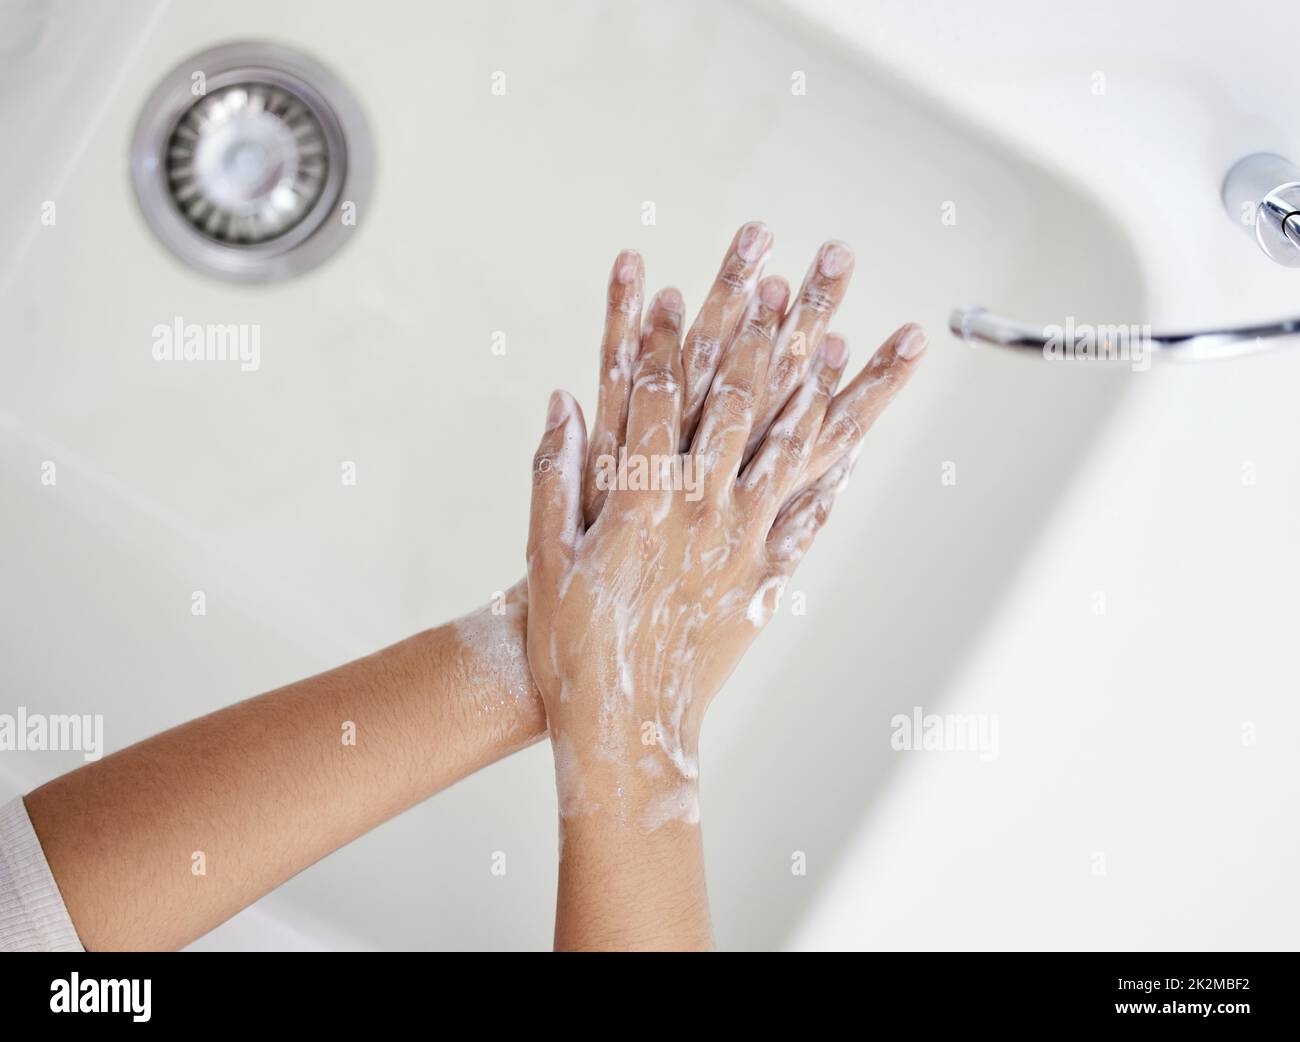 Waschen Sie Ihre Hände gründlich. Aufnahme einer nicht erkennbaren Person, die sich zu Hause die Hände wascht. Stockfoto